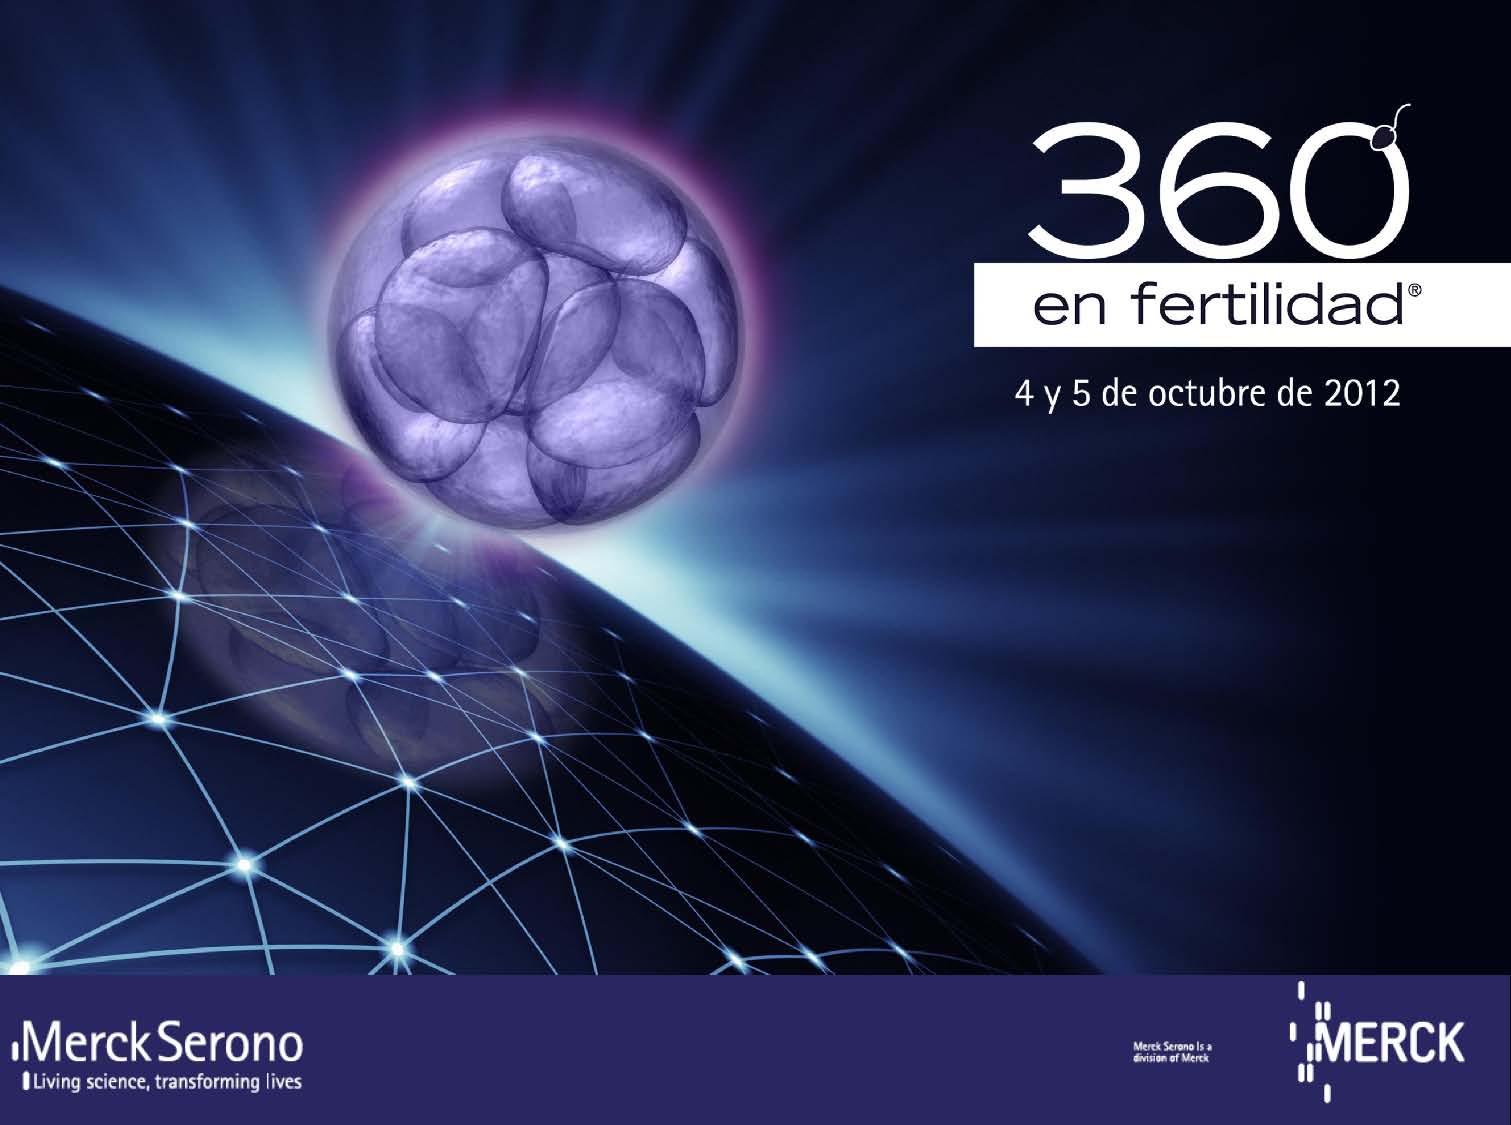 Barcelona acoge el II Encuentro 360º en Fertilidad